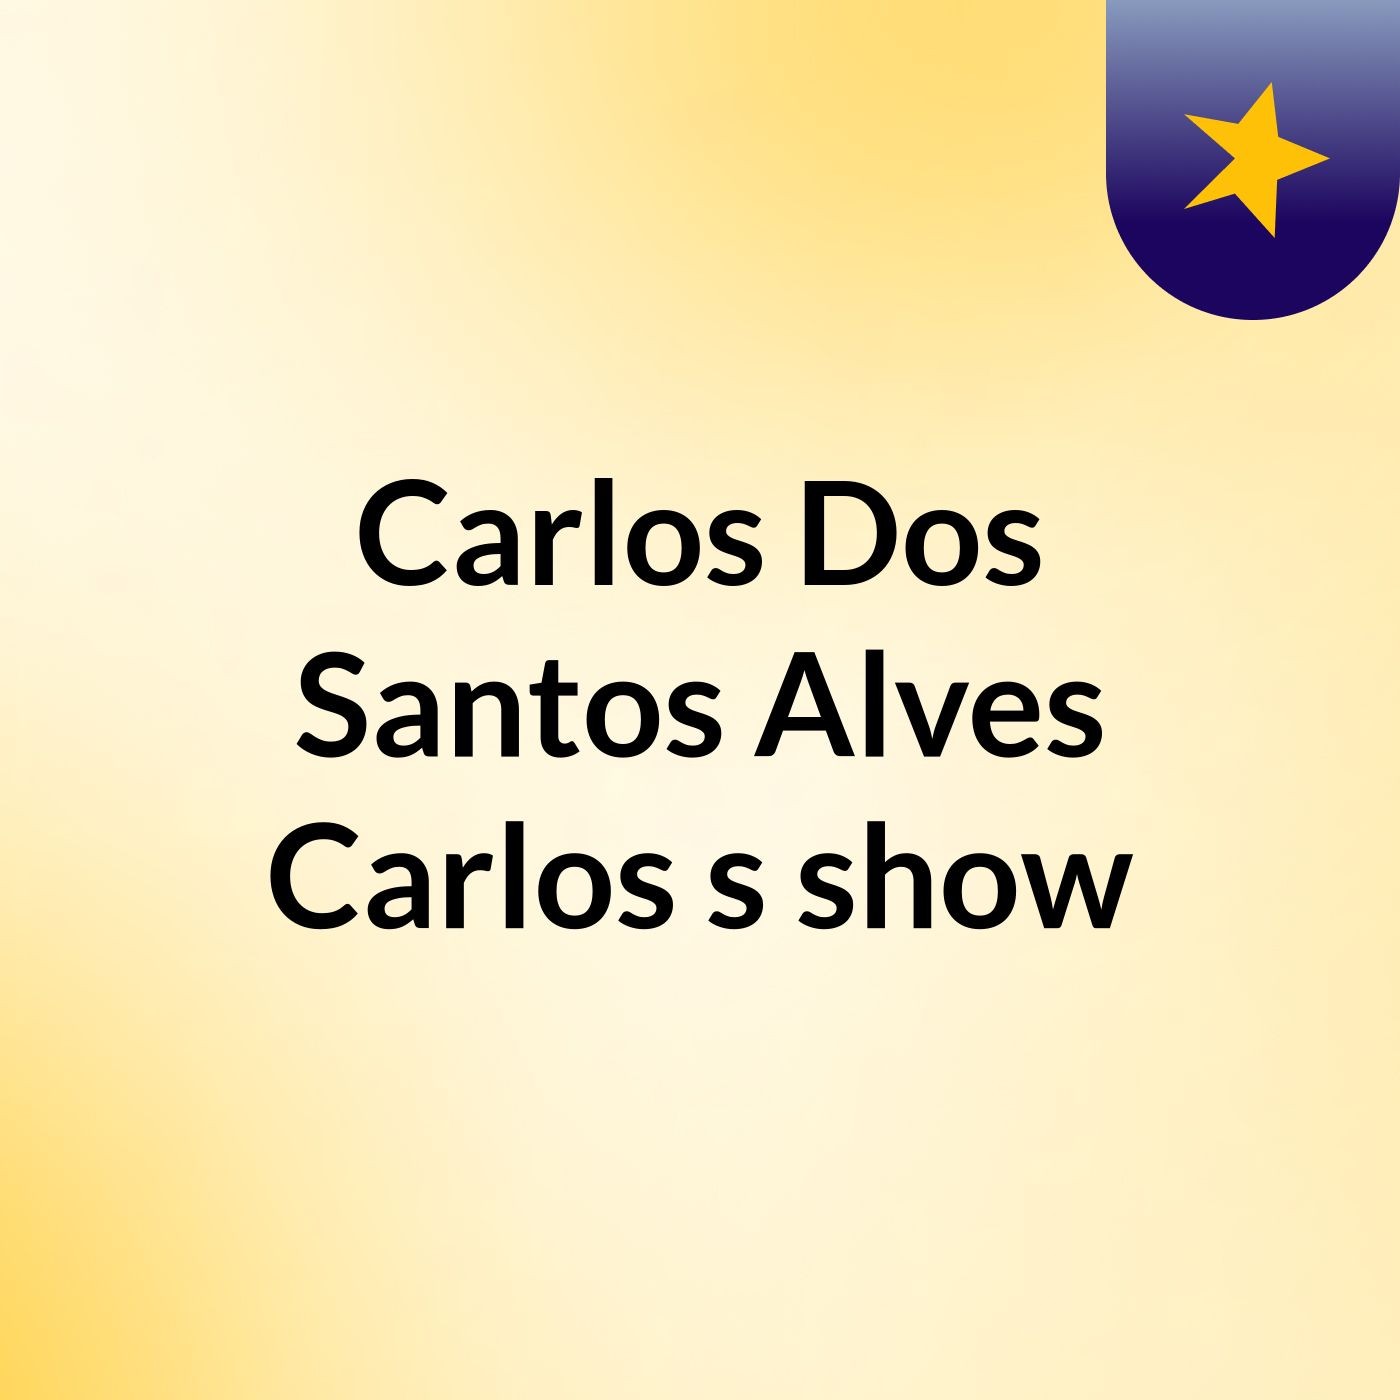 Carlos Dos Santos Alves Carlos's show